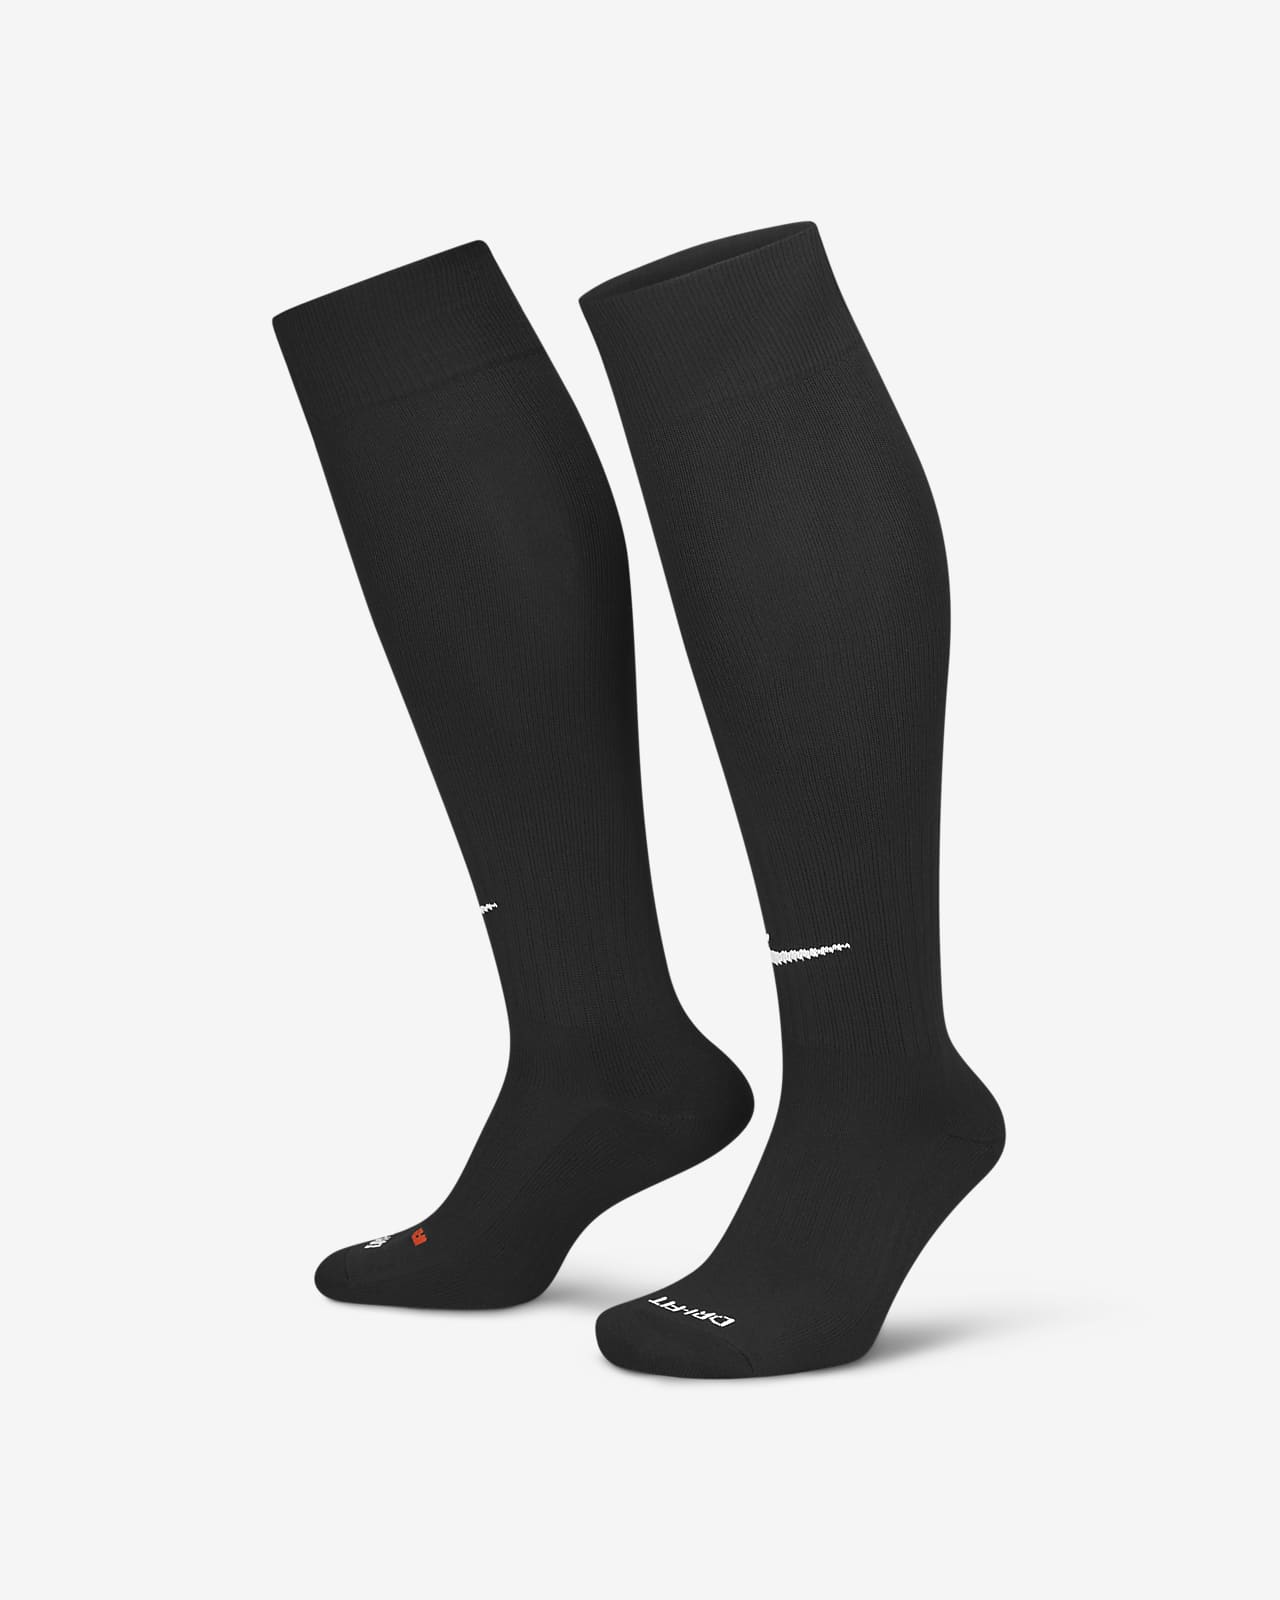 Nike Classic 2 Cushioned Over-the-Calf Socks.